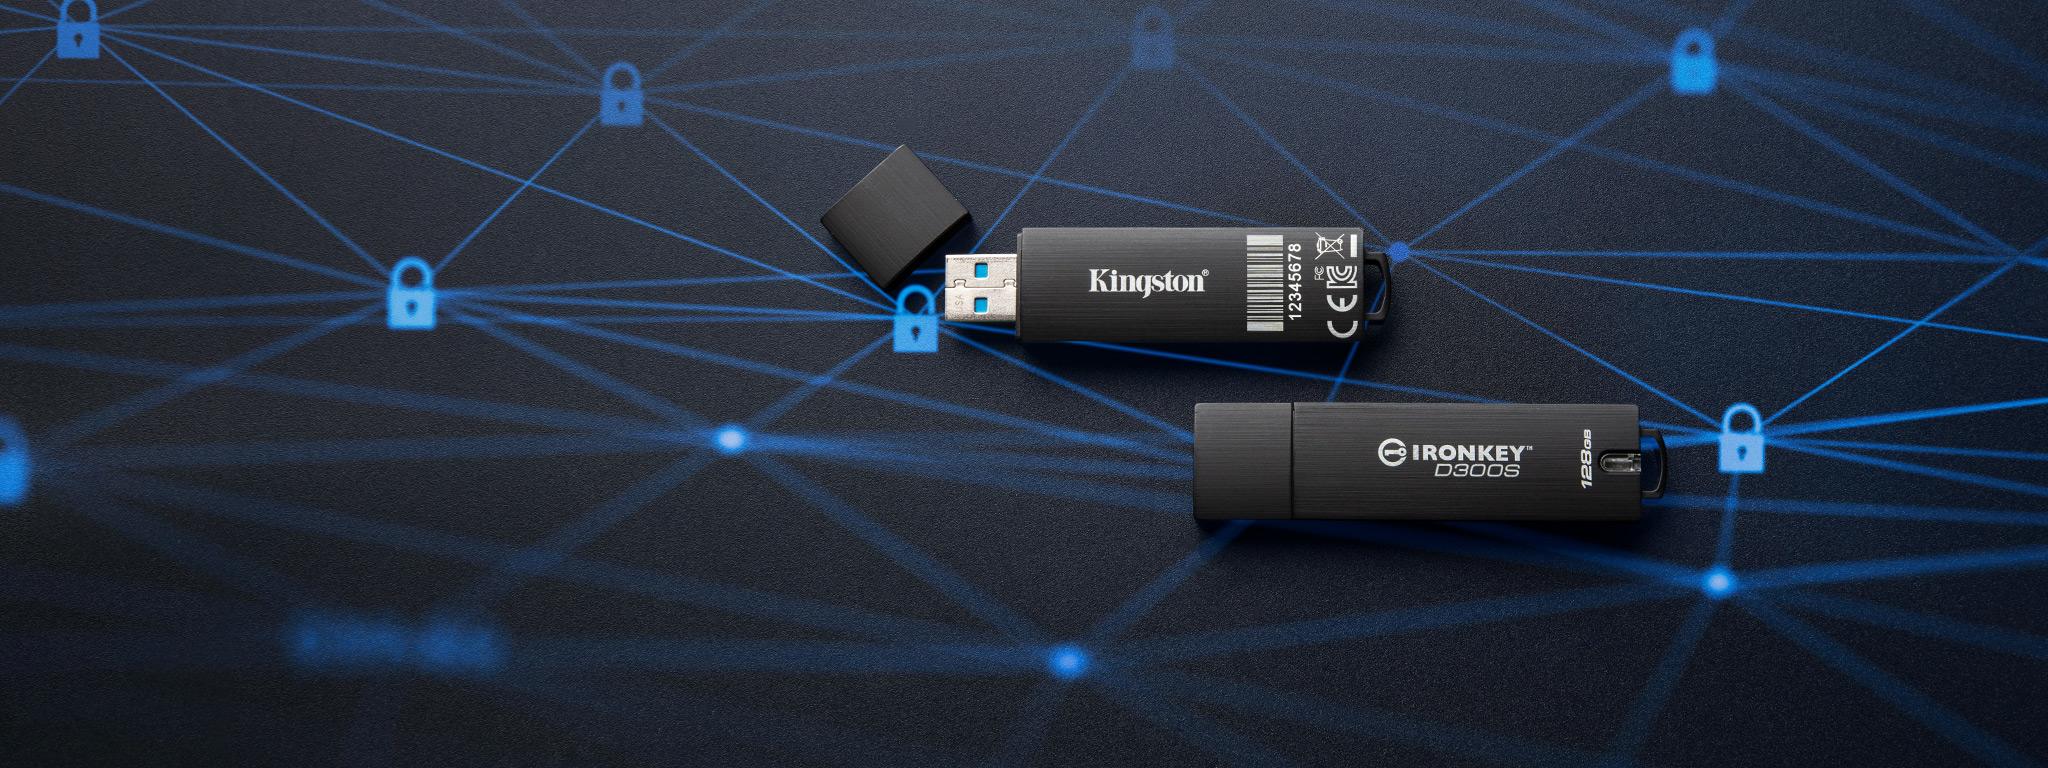 검은색 표면 위에 파란색 자물쇠 아이콘 그래픽이 있는 한 쌍의 IronKey D300S USB 플래시 드라이브가 놓여 있습니다